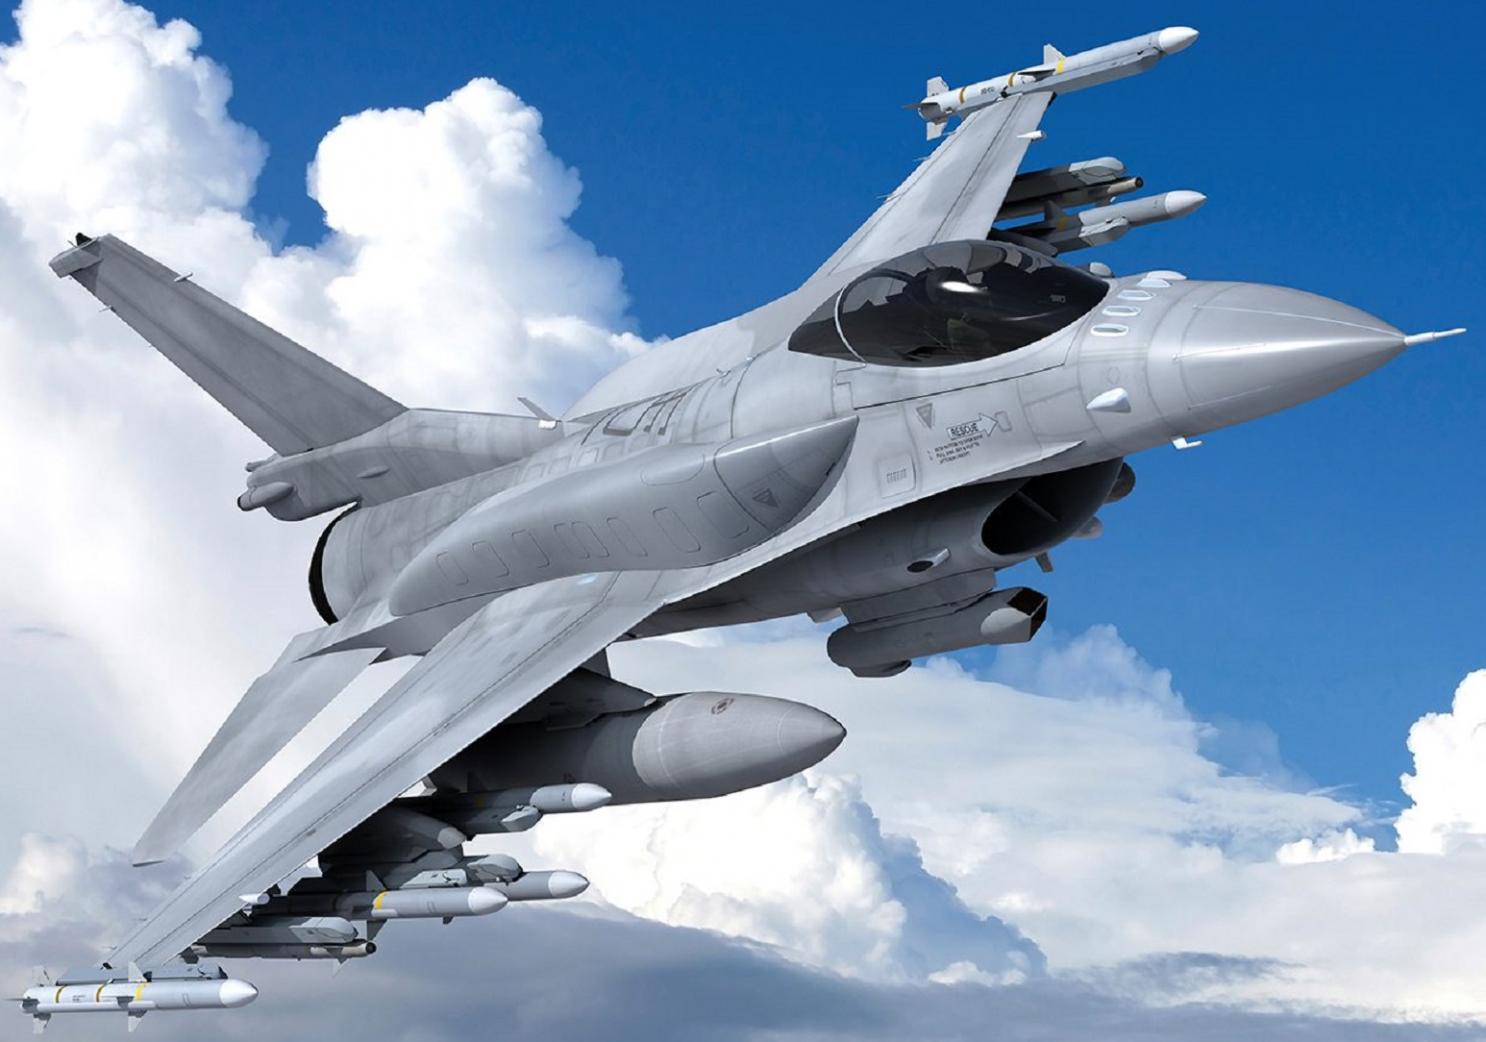 Съединените щати се съгласиха да прехвърлят изтребители F-16 от Дания